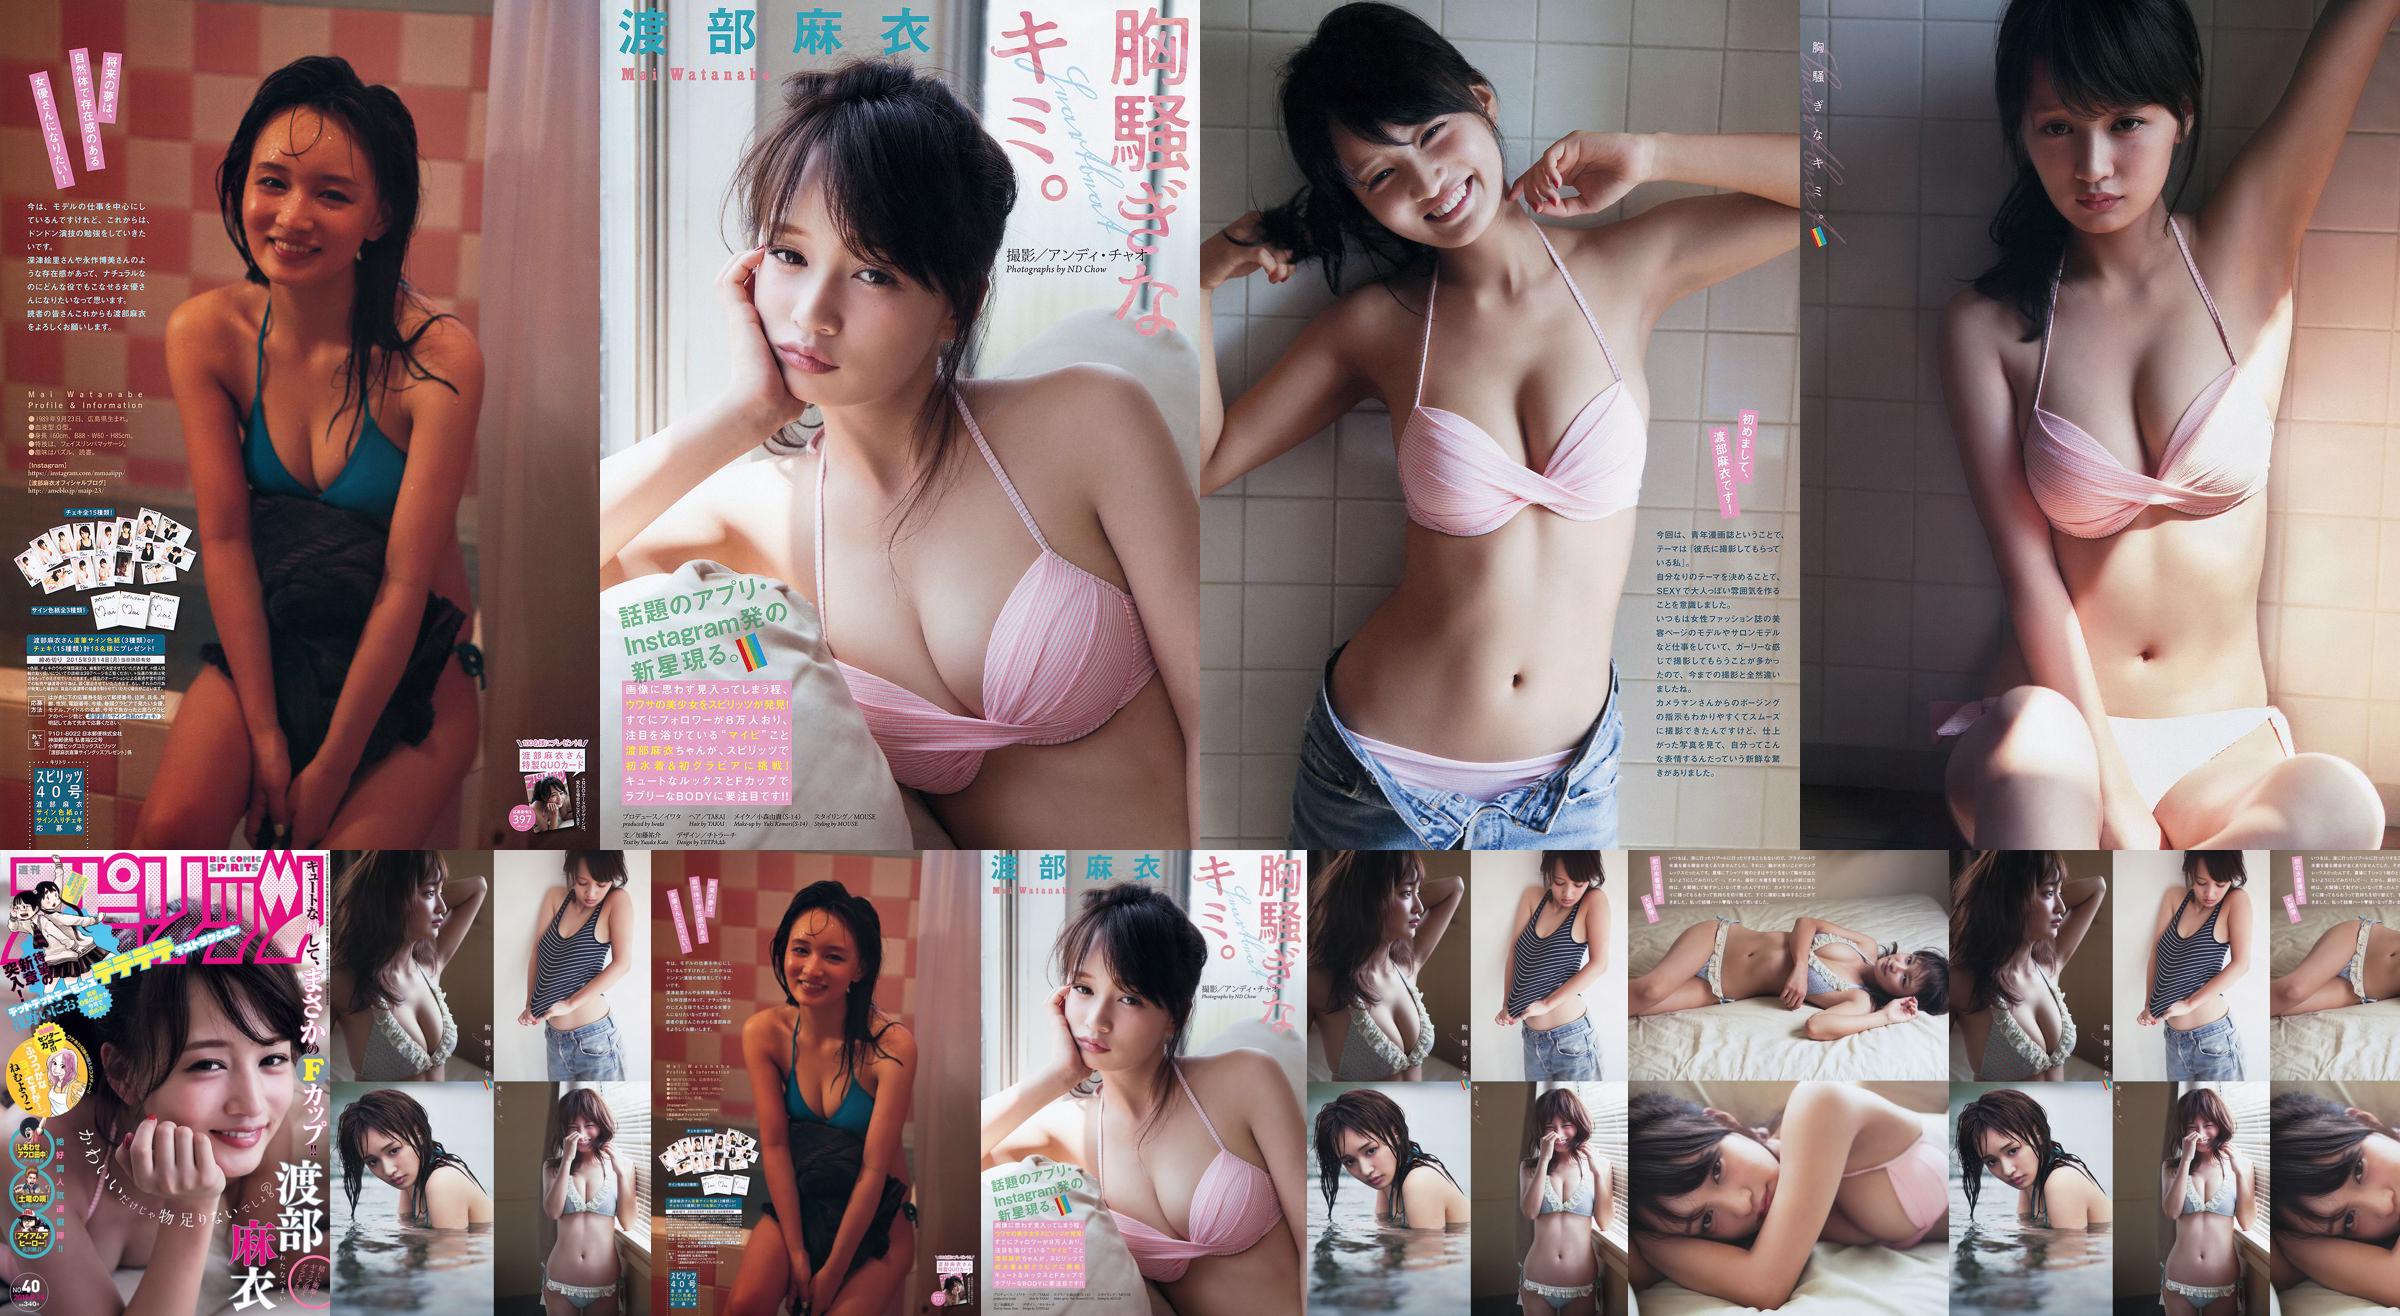 [Weekly Big Comic Spirits] Magazyn fotograficzny Watanabe Mai 2015 nr 40 No.76df17 Strona 1